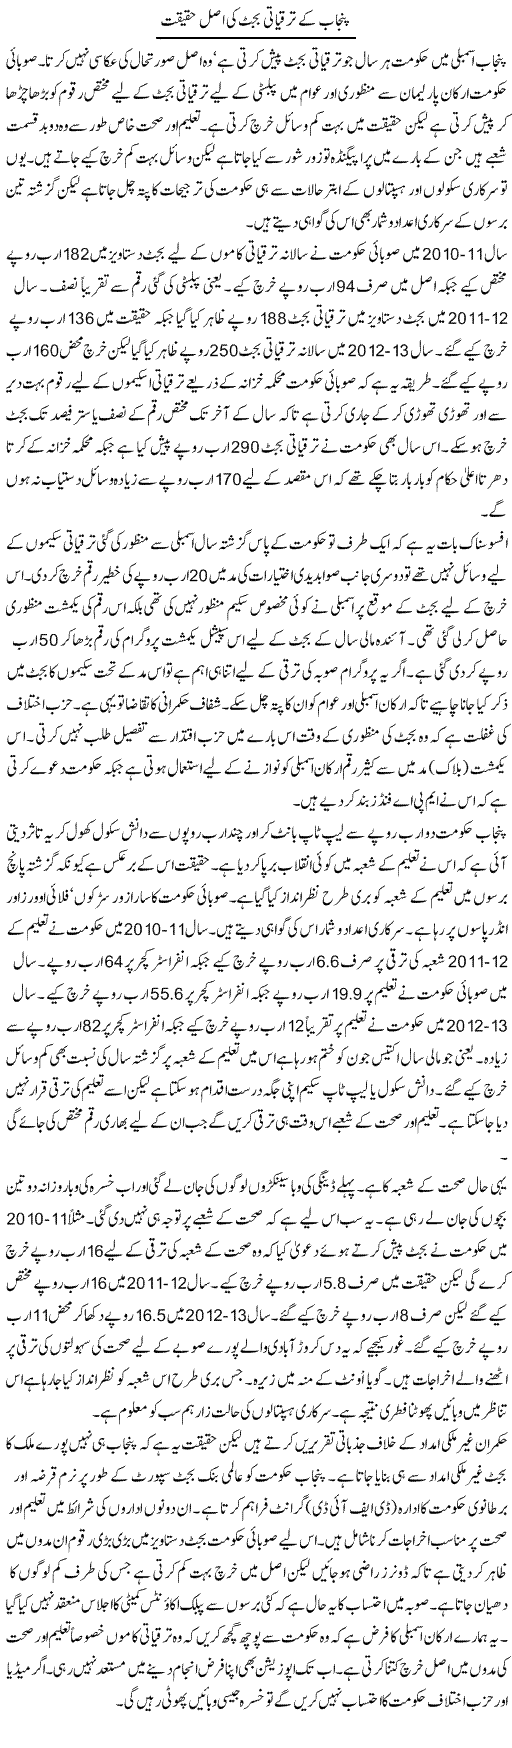 Punjab Kay Tarakiati Budget Ki Asal Haqeeqat | Adnan Adil Zaidi | Daily Urdu Columns